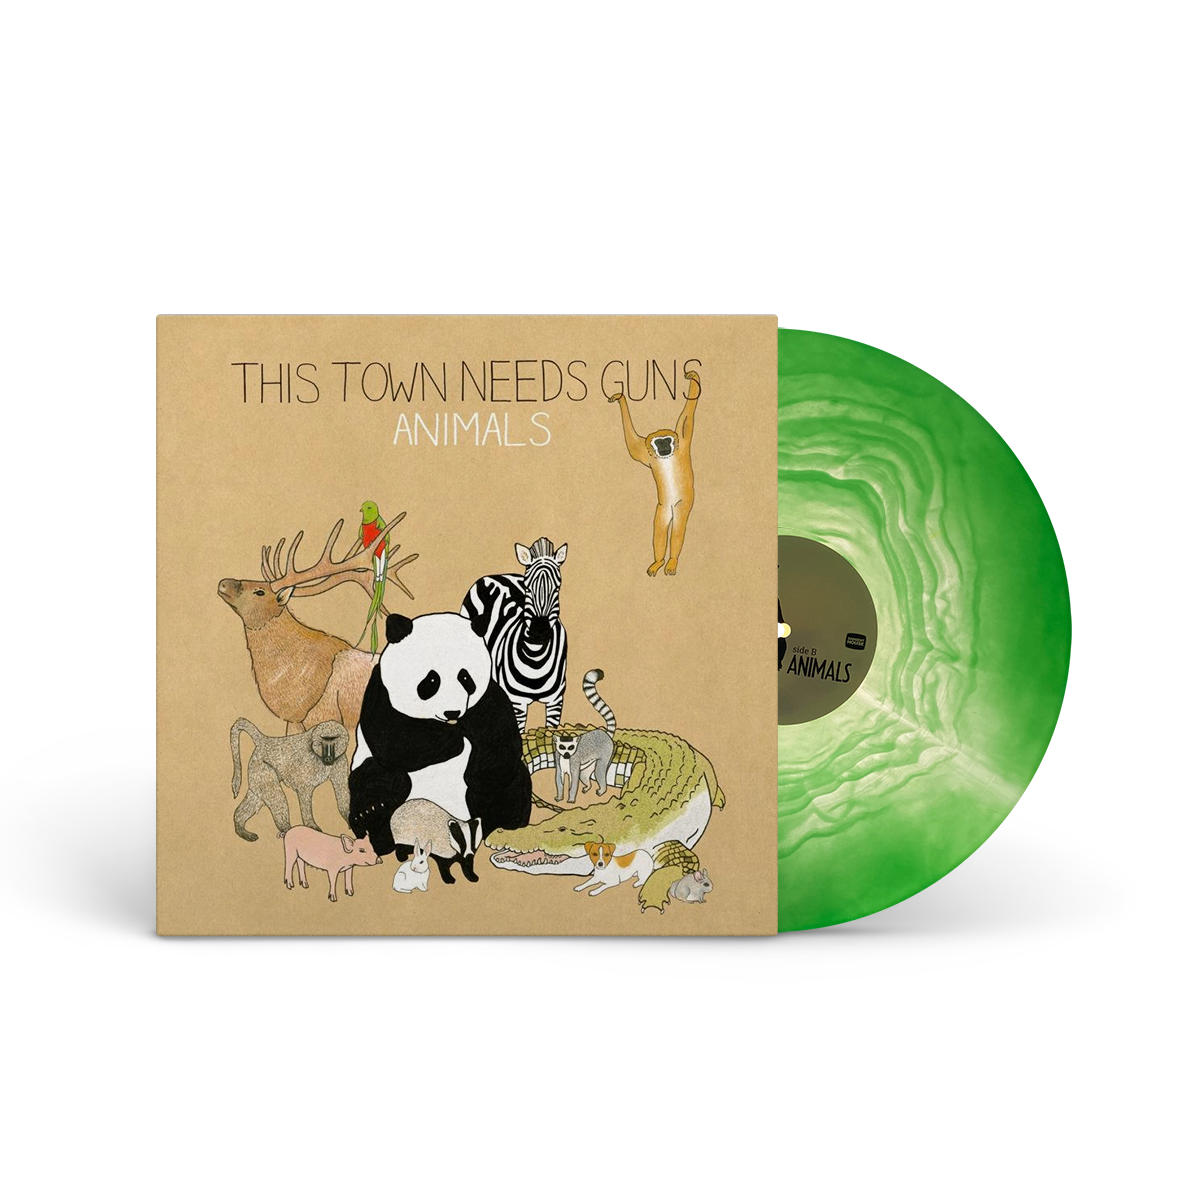 TTNG "Animals" LP